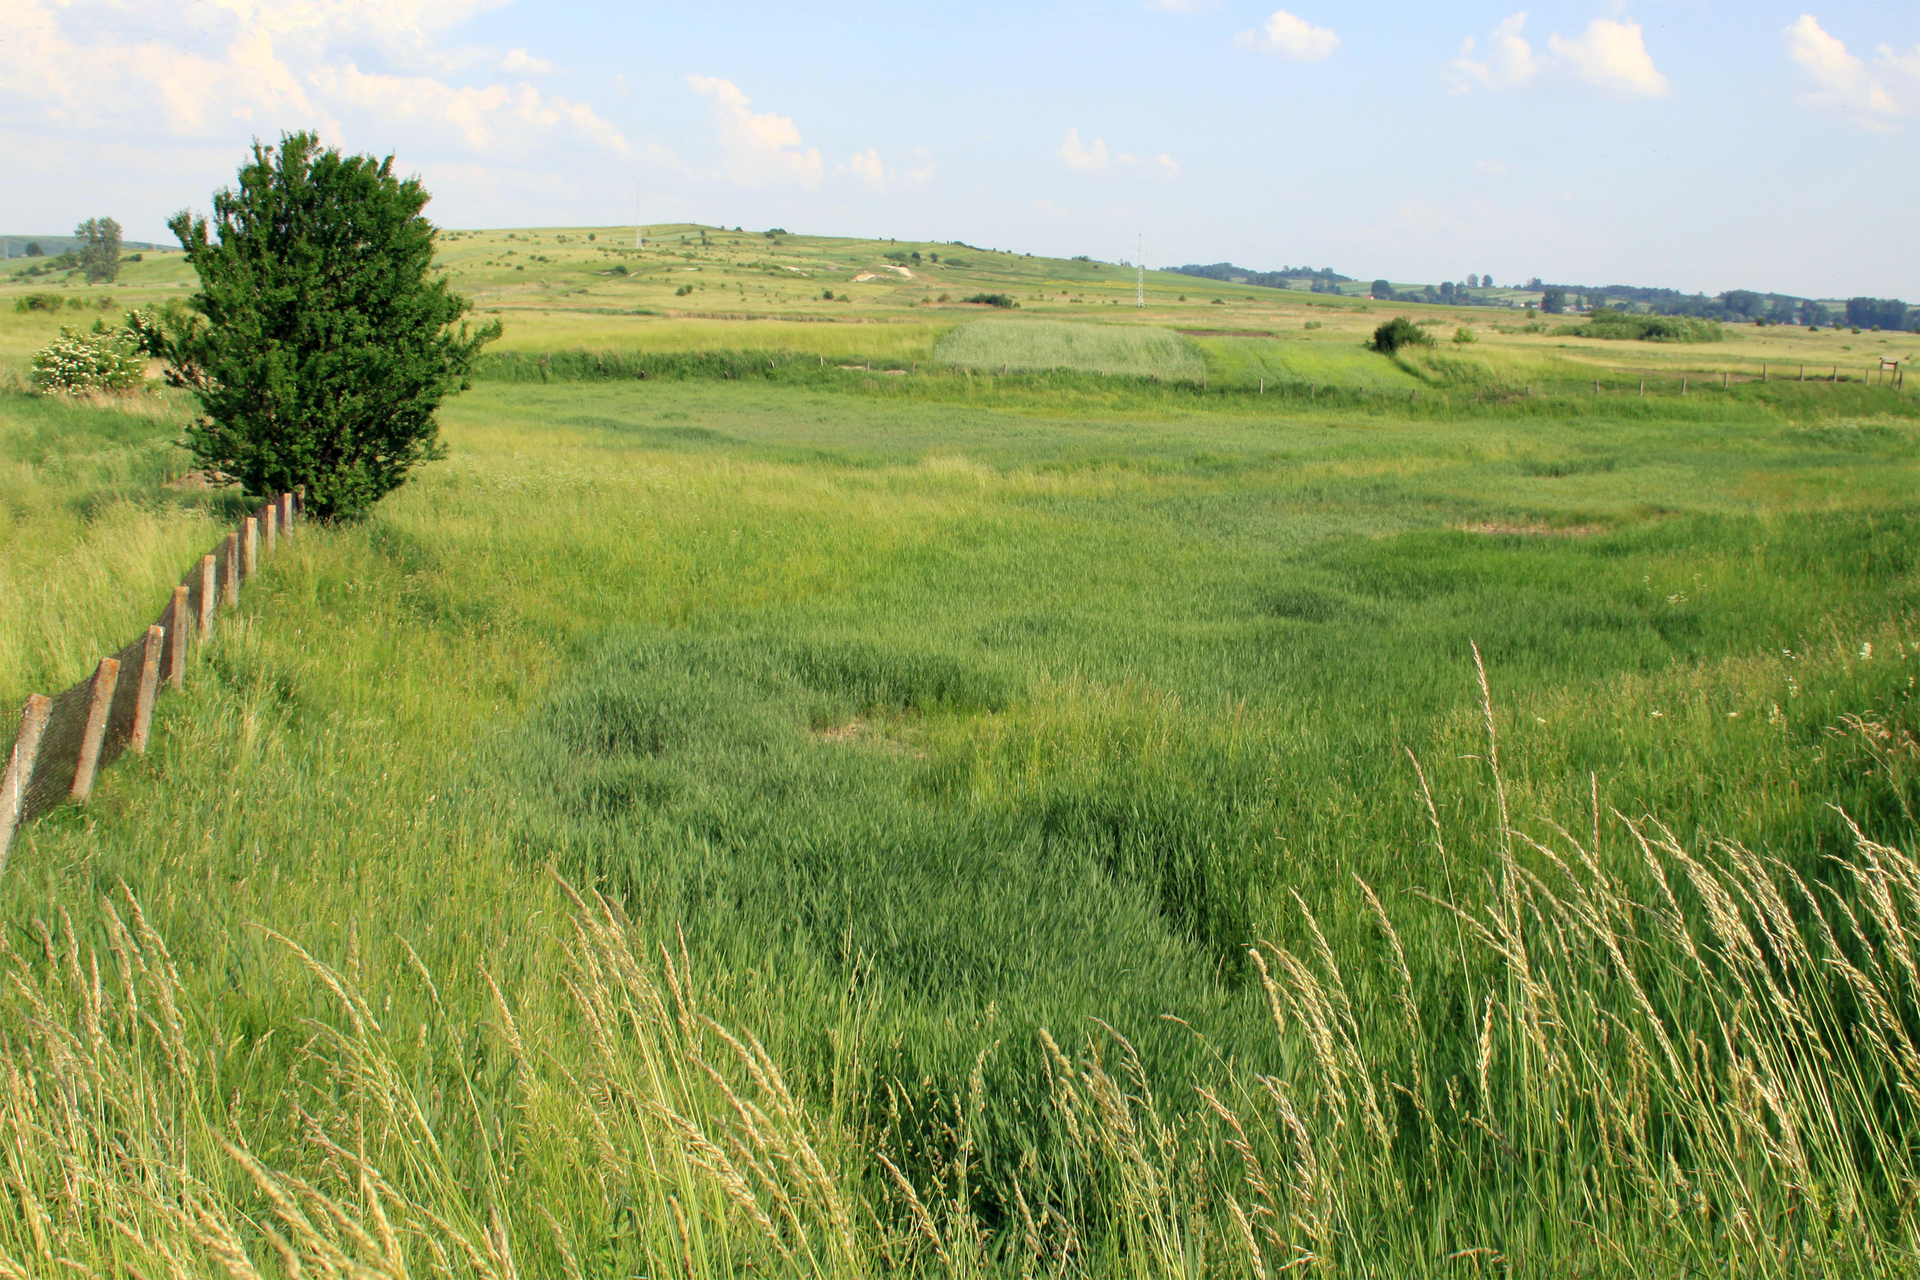 Fotografia przedstawia łąkę w łagodnej dolinie. Z lewej znajduje się ogrodzenie i drzewo. To rezerwat słonorośli Owczary w w województwie świętokrzyskim.